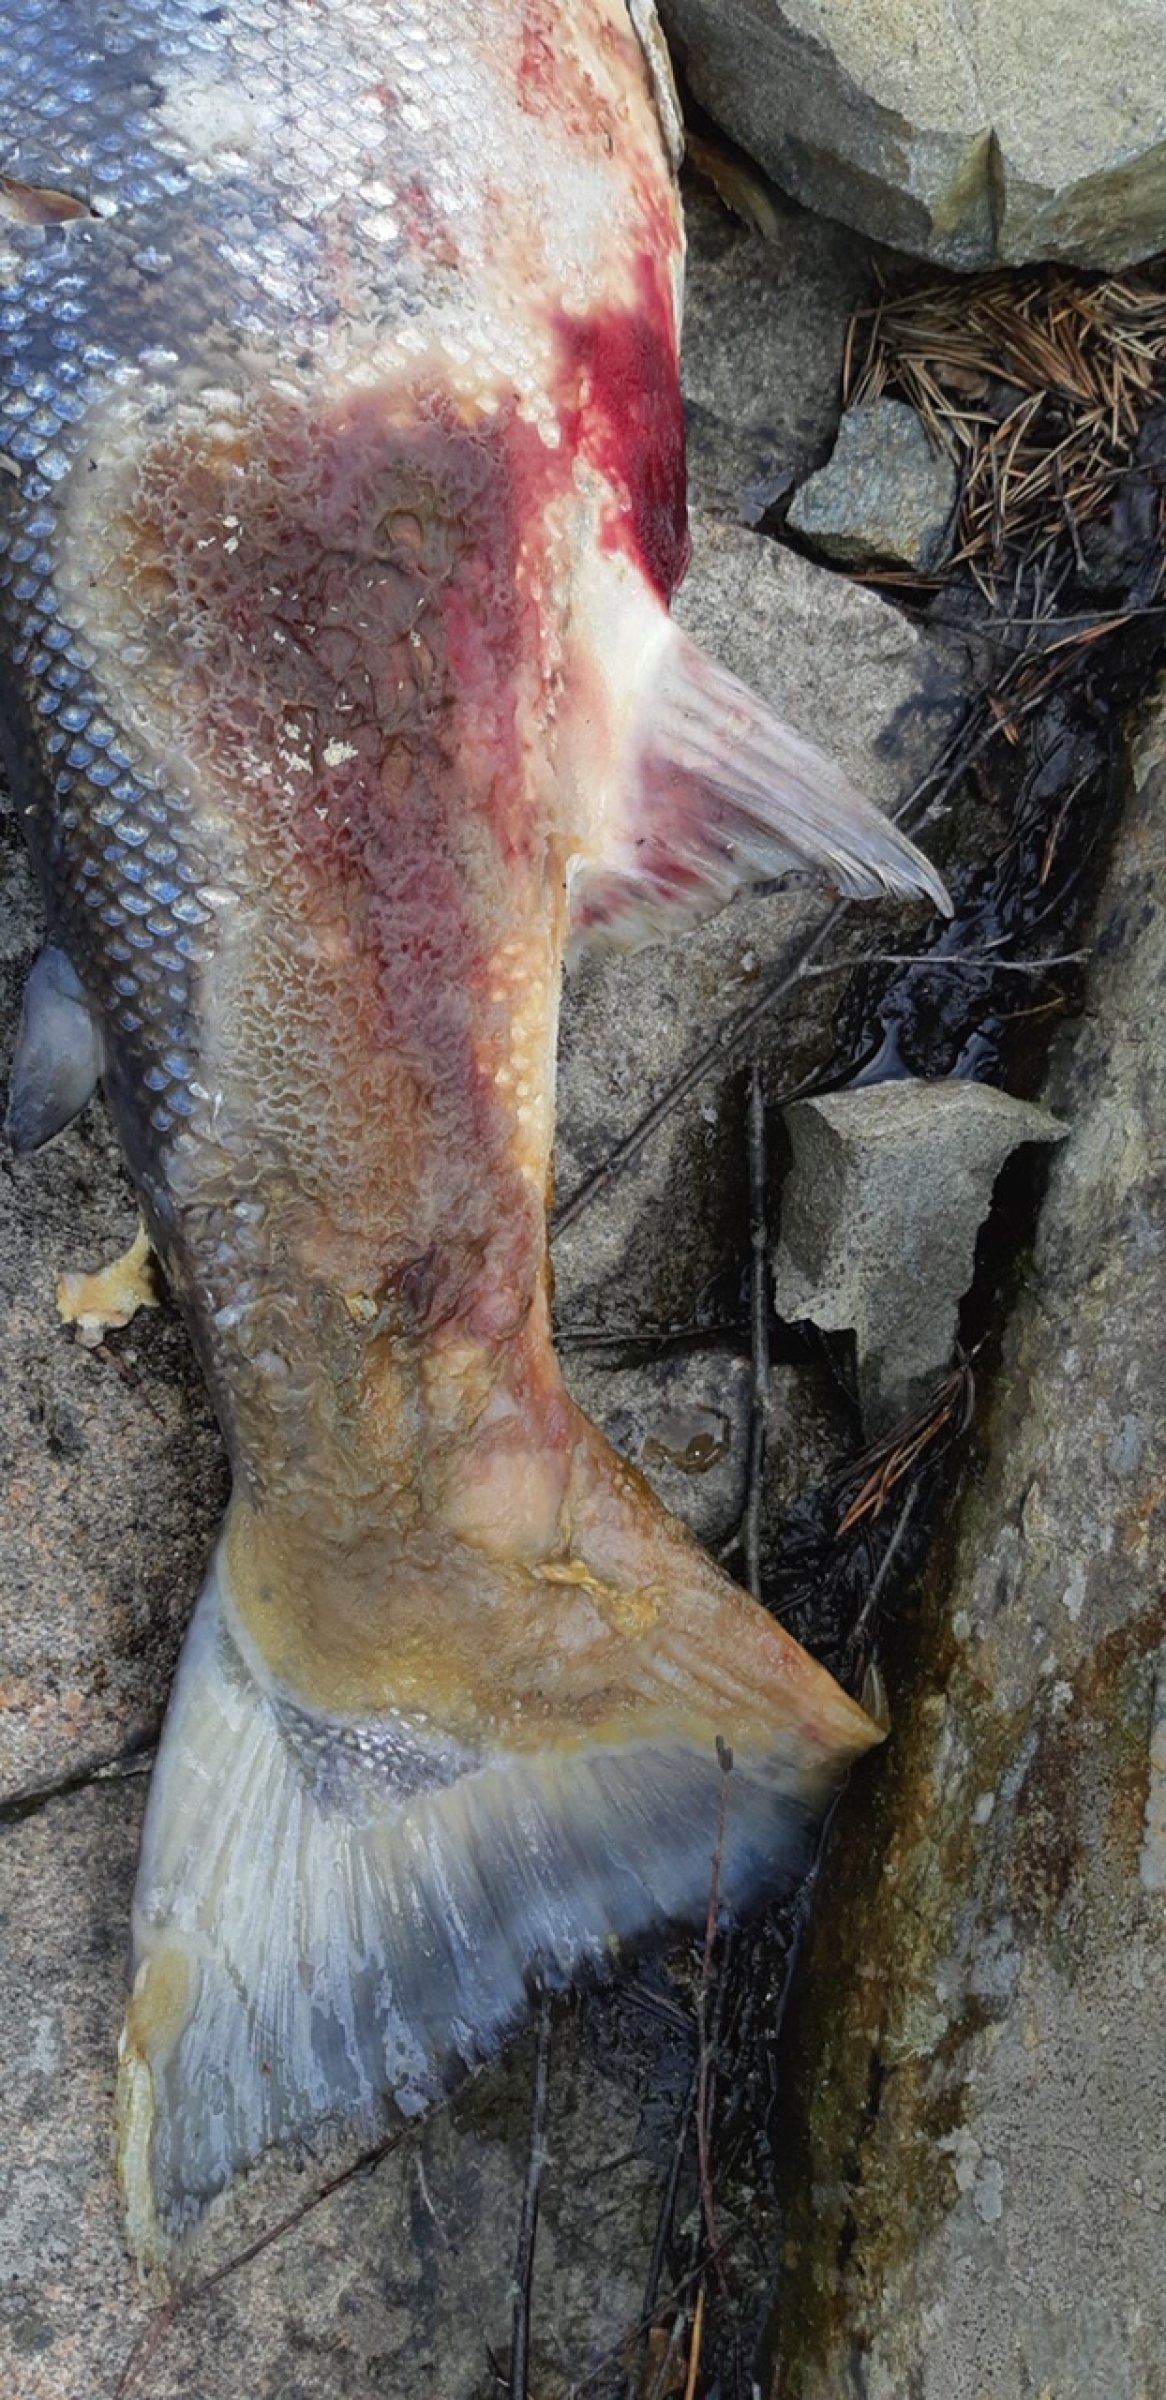 Nærbilde av skader på syk laks fra Tovdalselva i Agder. Veterinærinstituttet ble varslet 8. juni 2019  av Mattilsynet i Agder om innsendelse av fisk for analyse også fra denne elva.